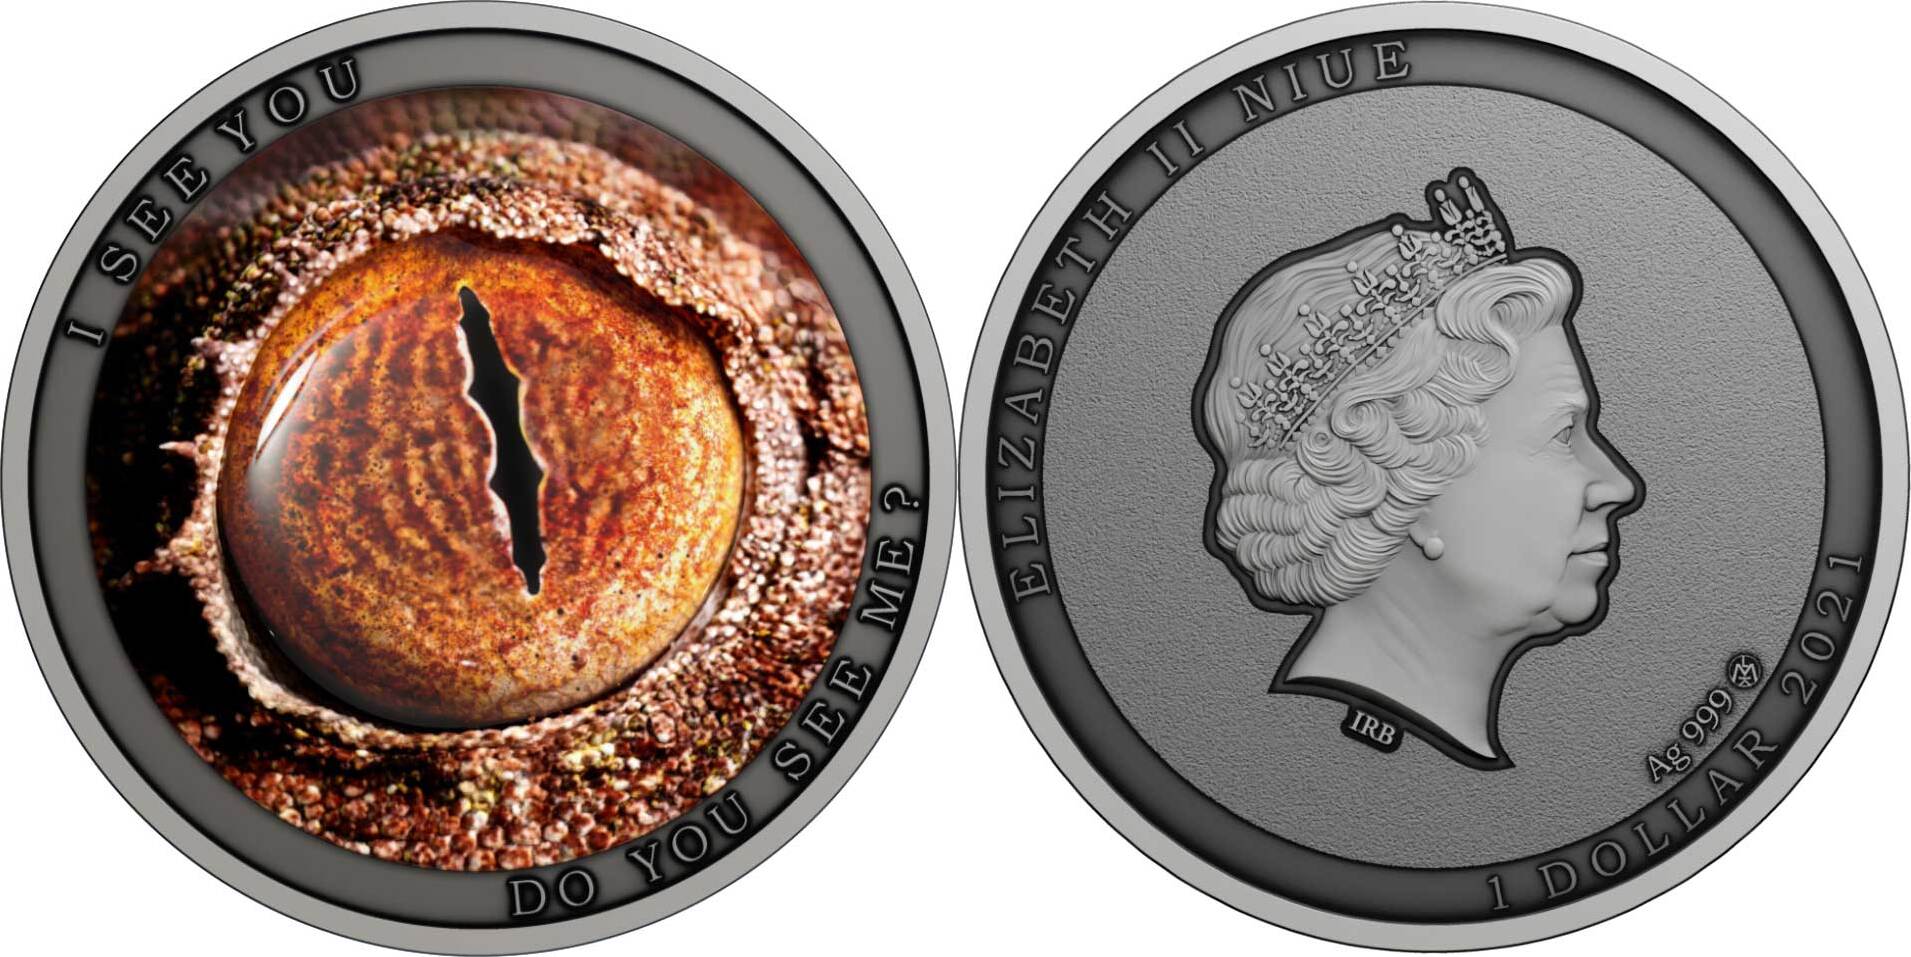 Серебряные монеты Ниуэ. Серебряная монета Ниуэ " скарабей". Монета серебро Niue 1 доллар Sagittarius 3647. Монеты серебро камни счастья месяцы 1$ Niue 2014. 1 доллар ниуэ